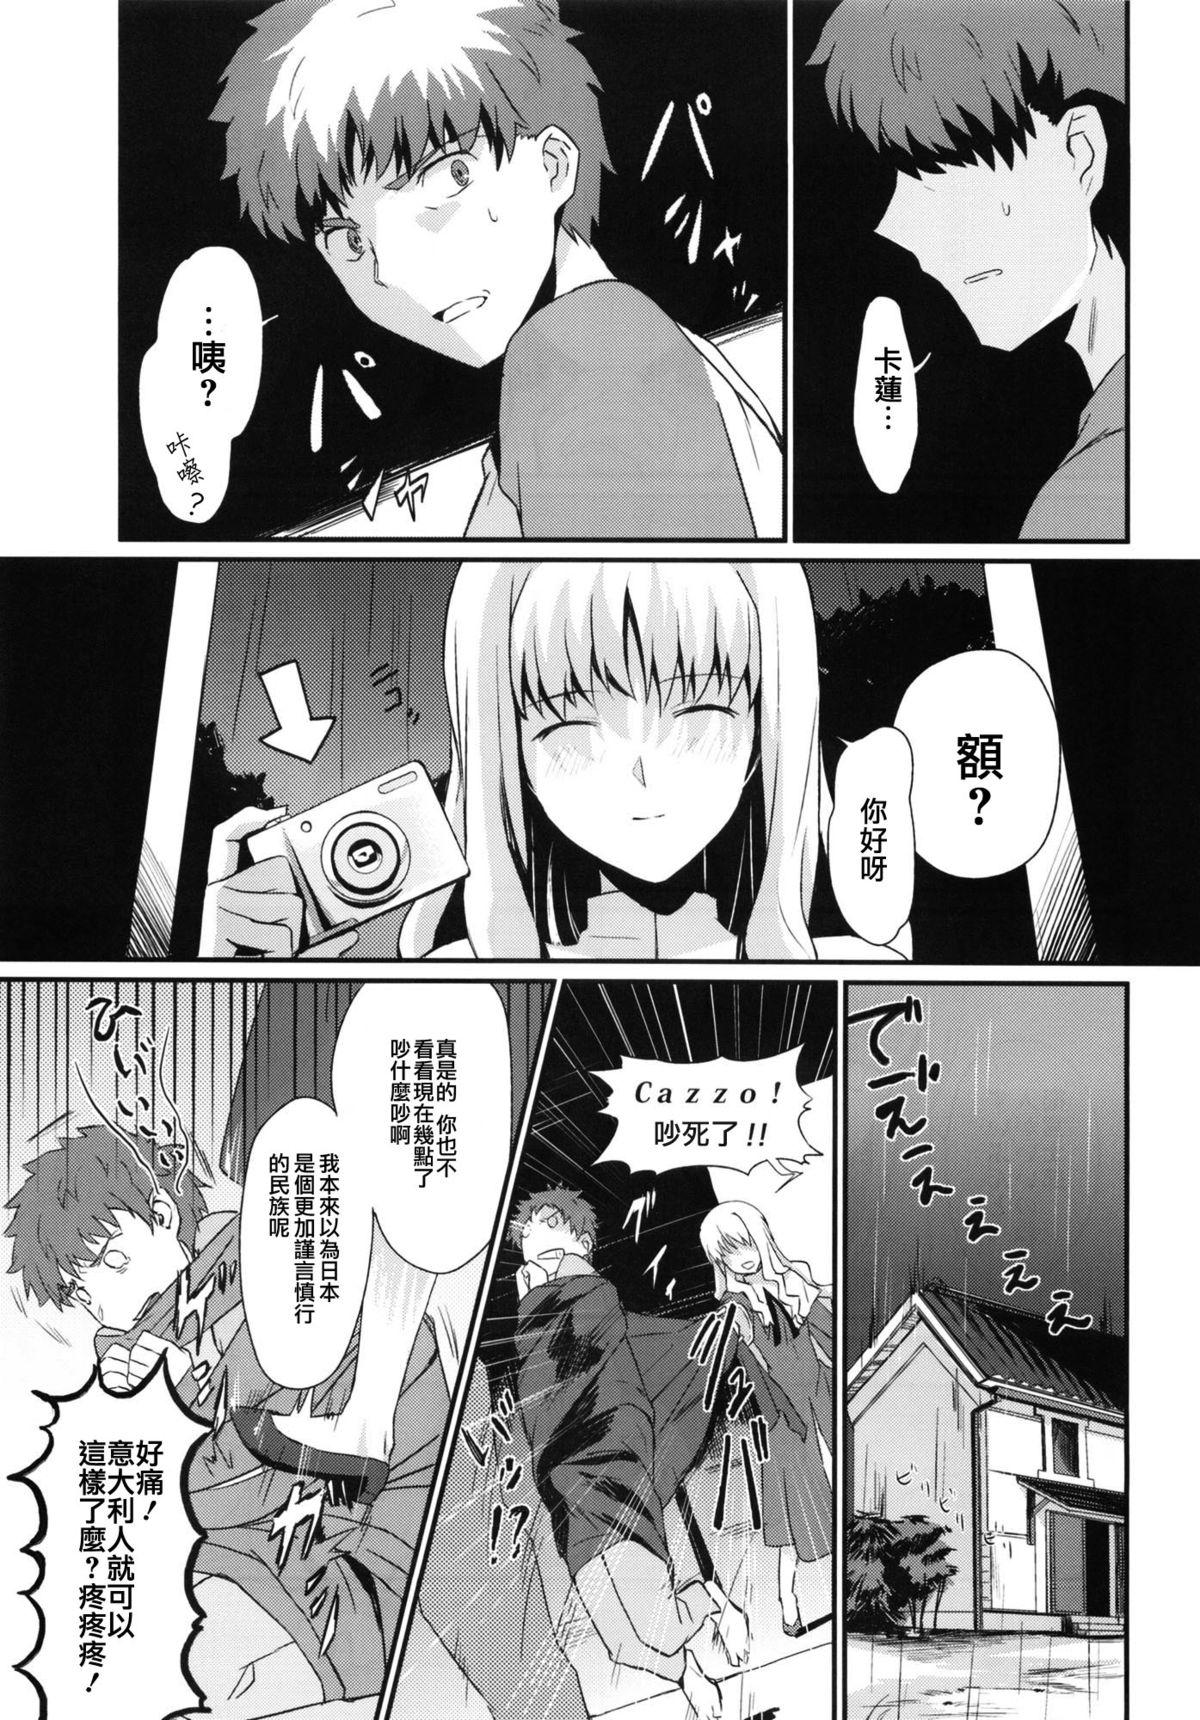 Cei Otakusa no Yoru - Fate hollow ataraxia Highheels - Page 9